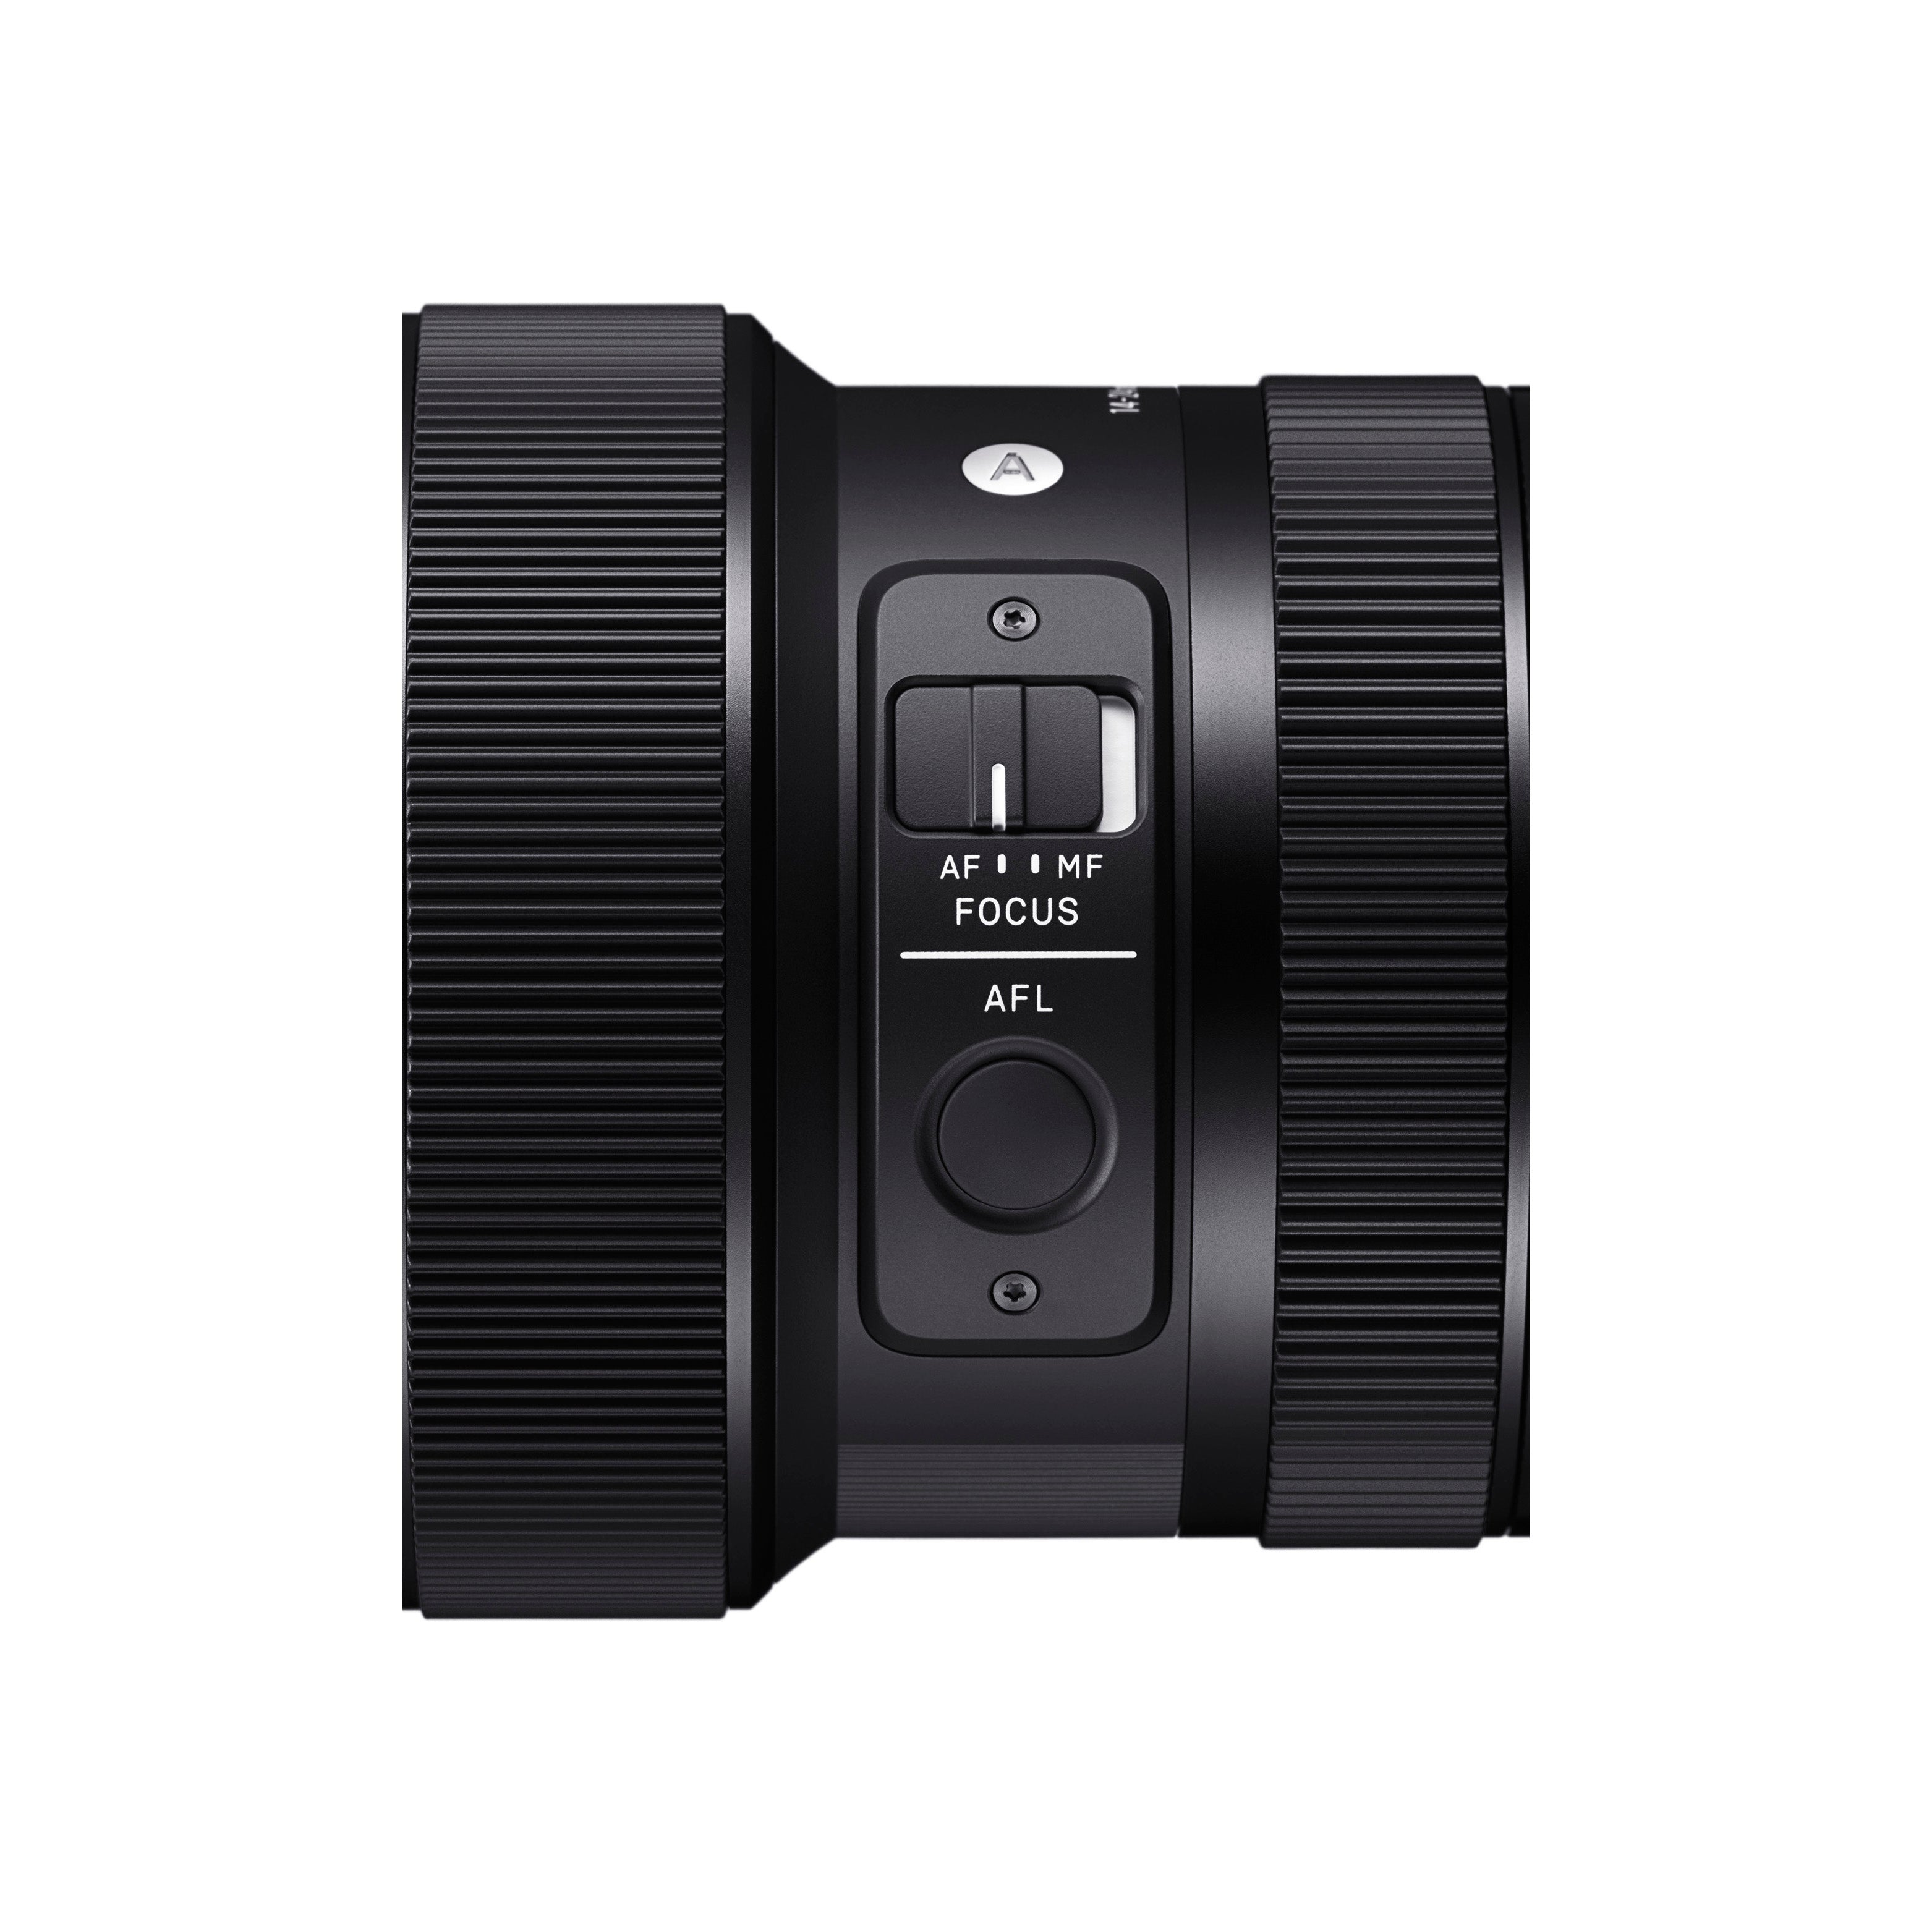 Sigma 14-24mm f2.8 DG DN Art Lens pour Leica L Mount